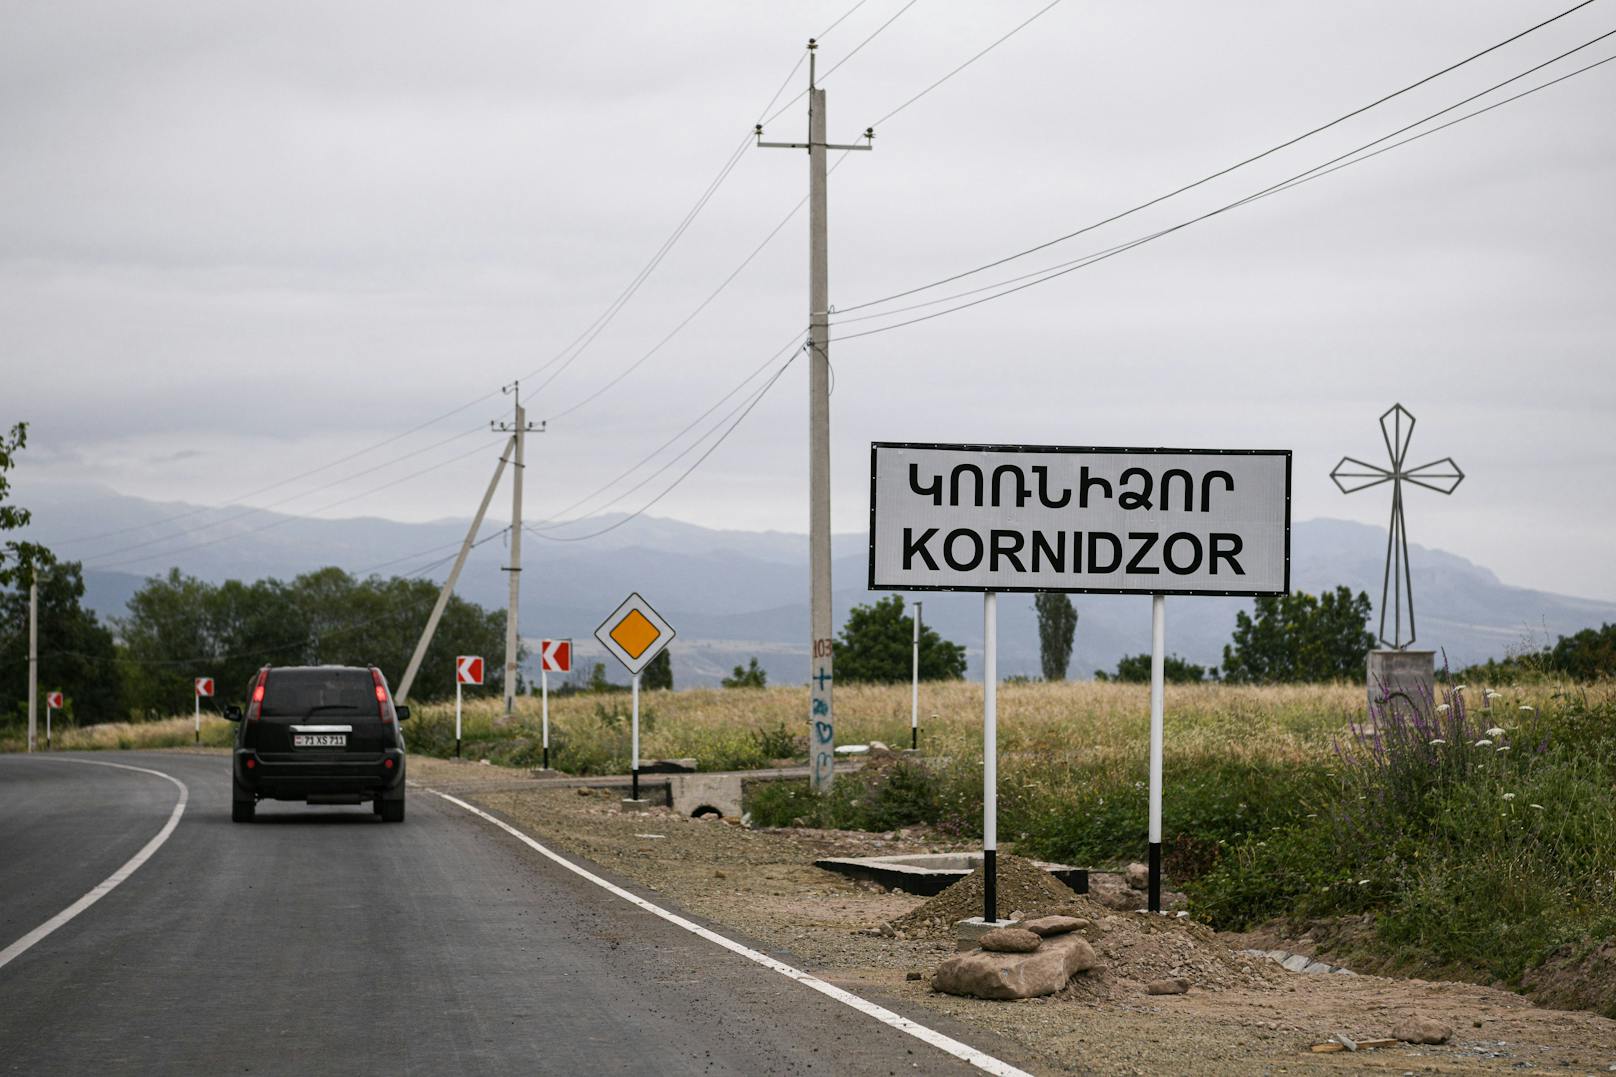 In der Region Berg-Karabach waren erneut Kämpfe ausgebrochen. 